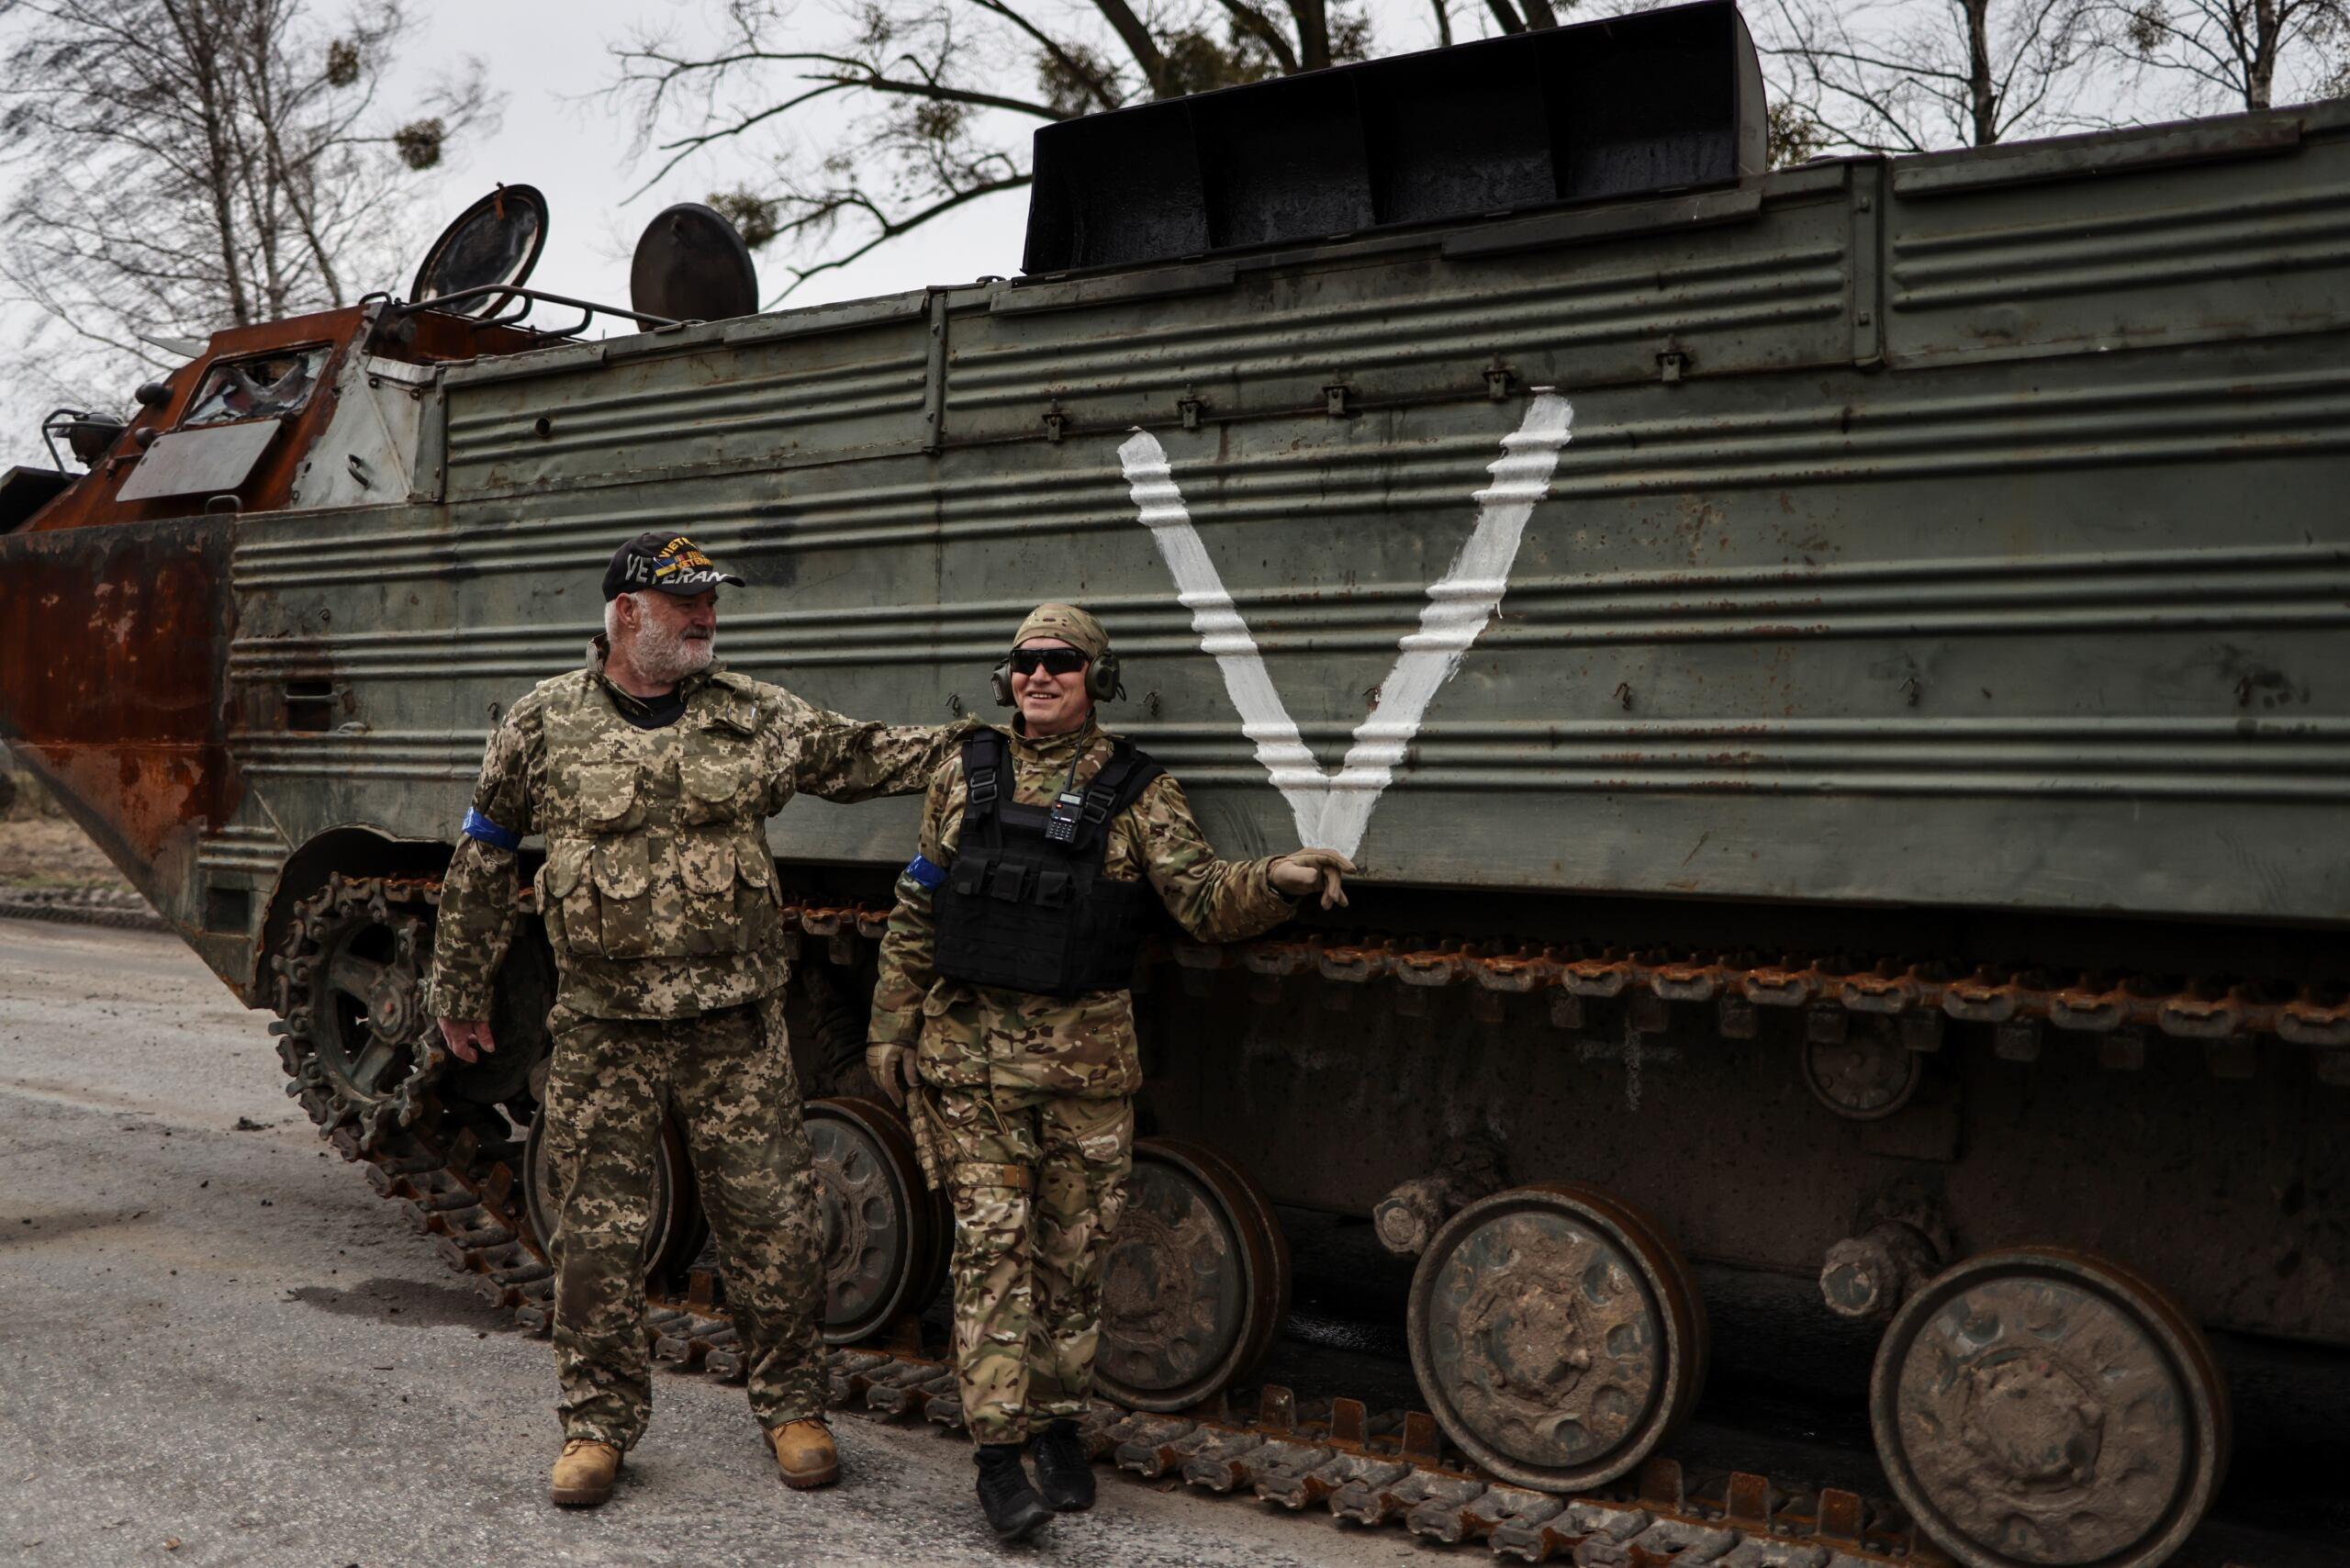 W pobliżu Budy-Babinieckiej, Ukraina, 5.04.2022. Weteran z USA z żołnierzem ukraińskim patrolują drogę